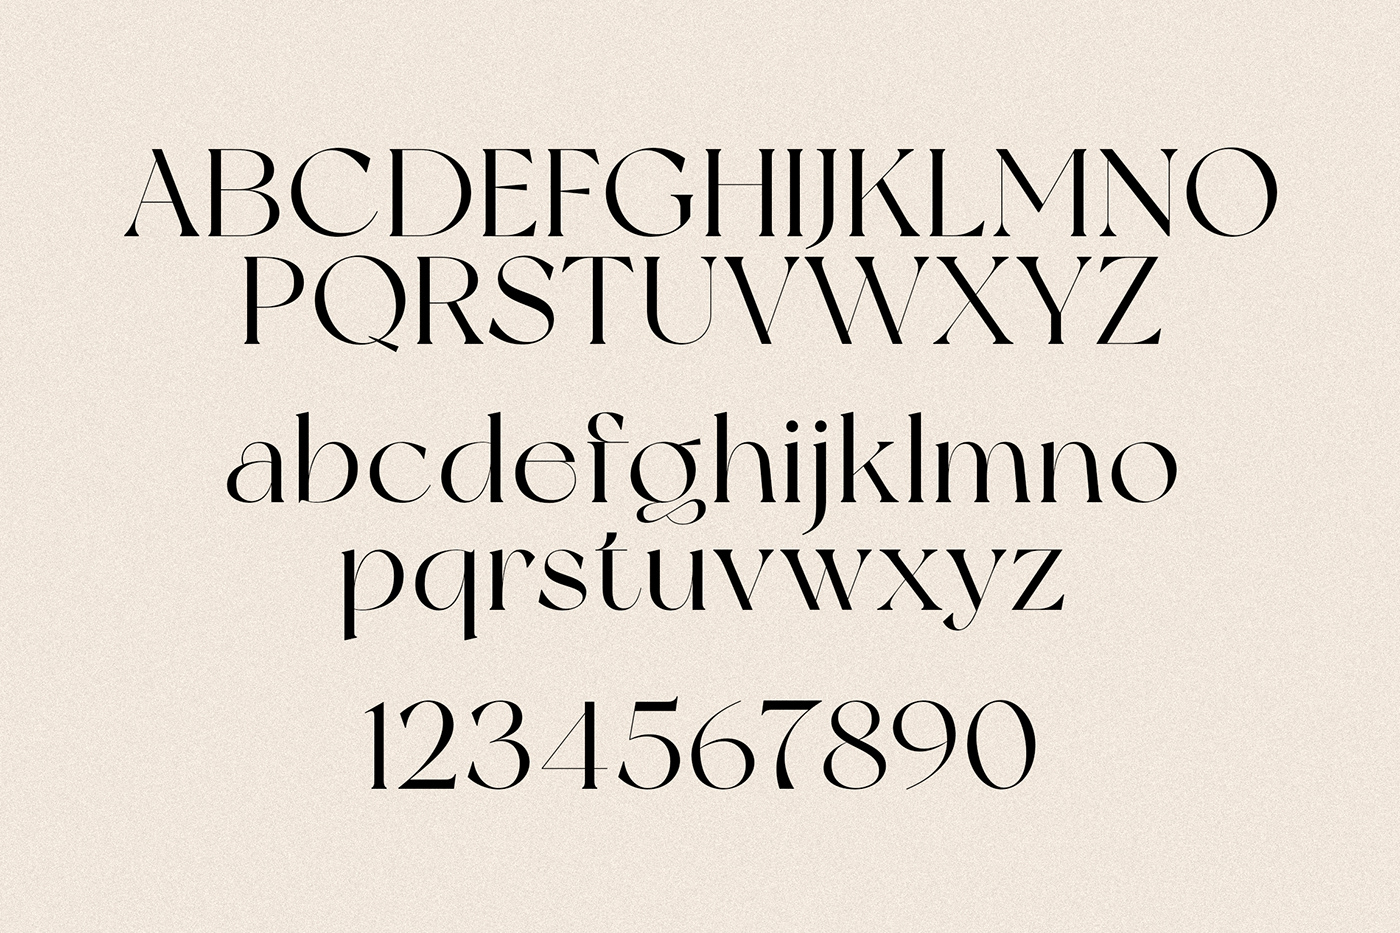 Newyork Typeface / Free On Behance